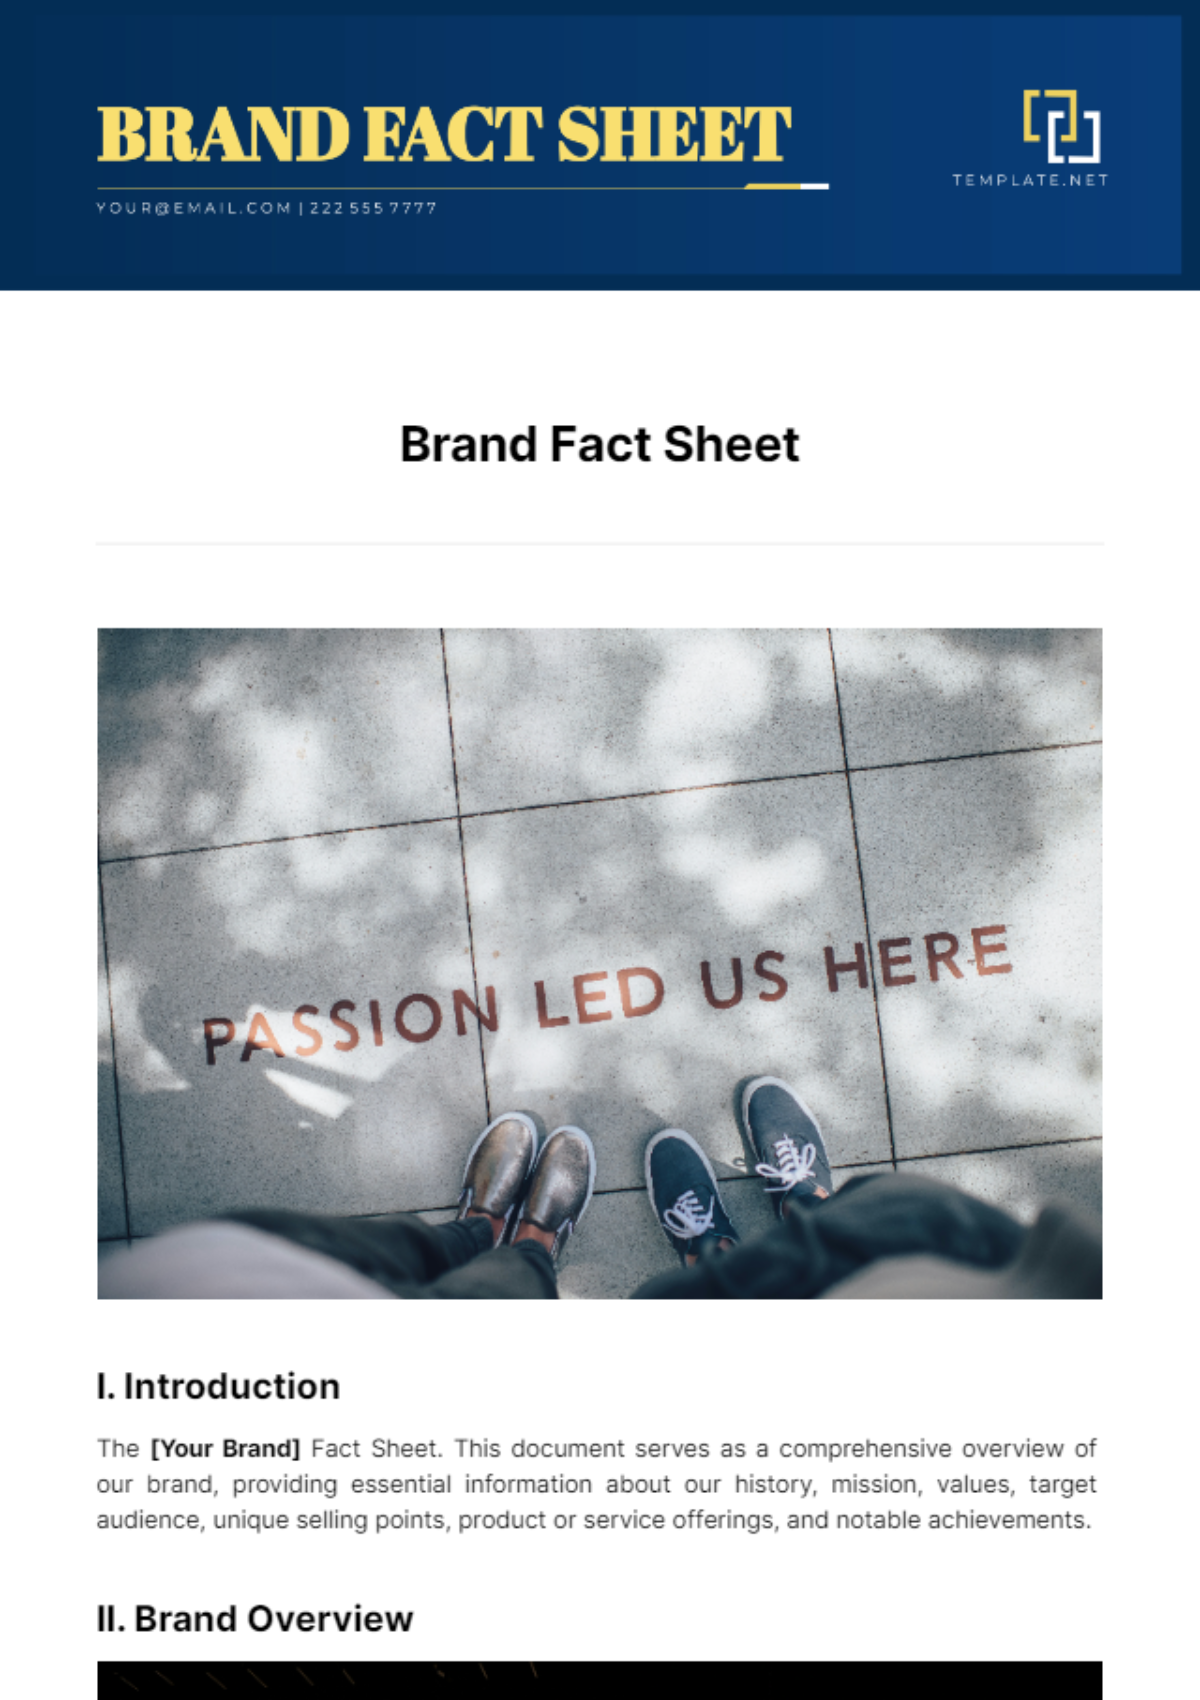 Brand Fact Sheet Template